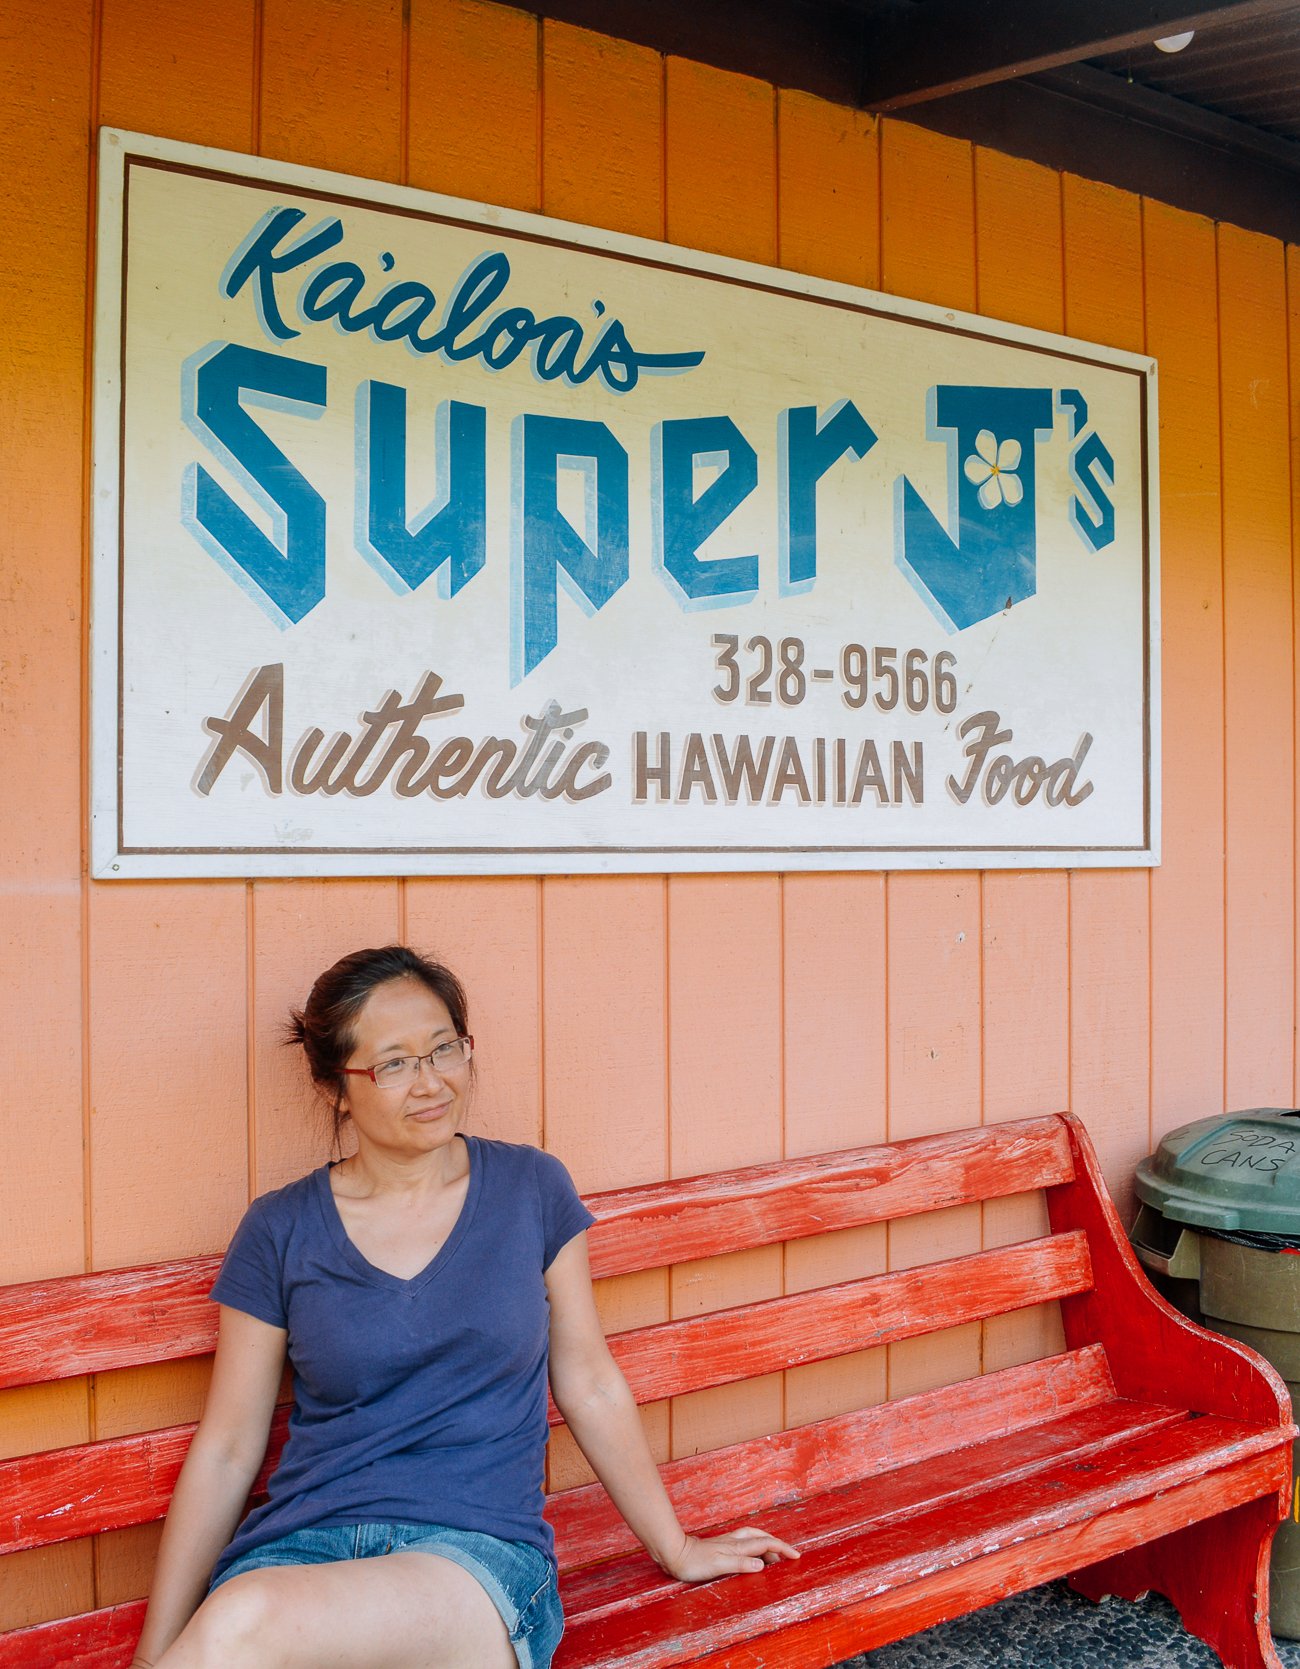 Judy outside of Kaaloa Super J in 2013